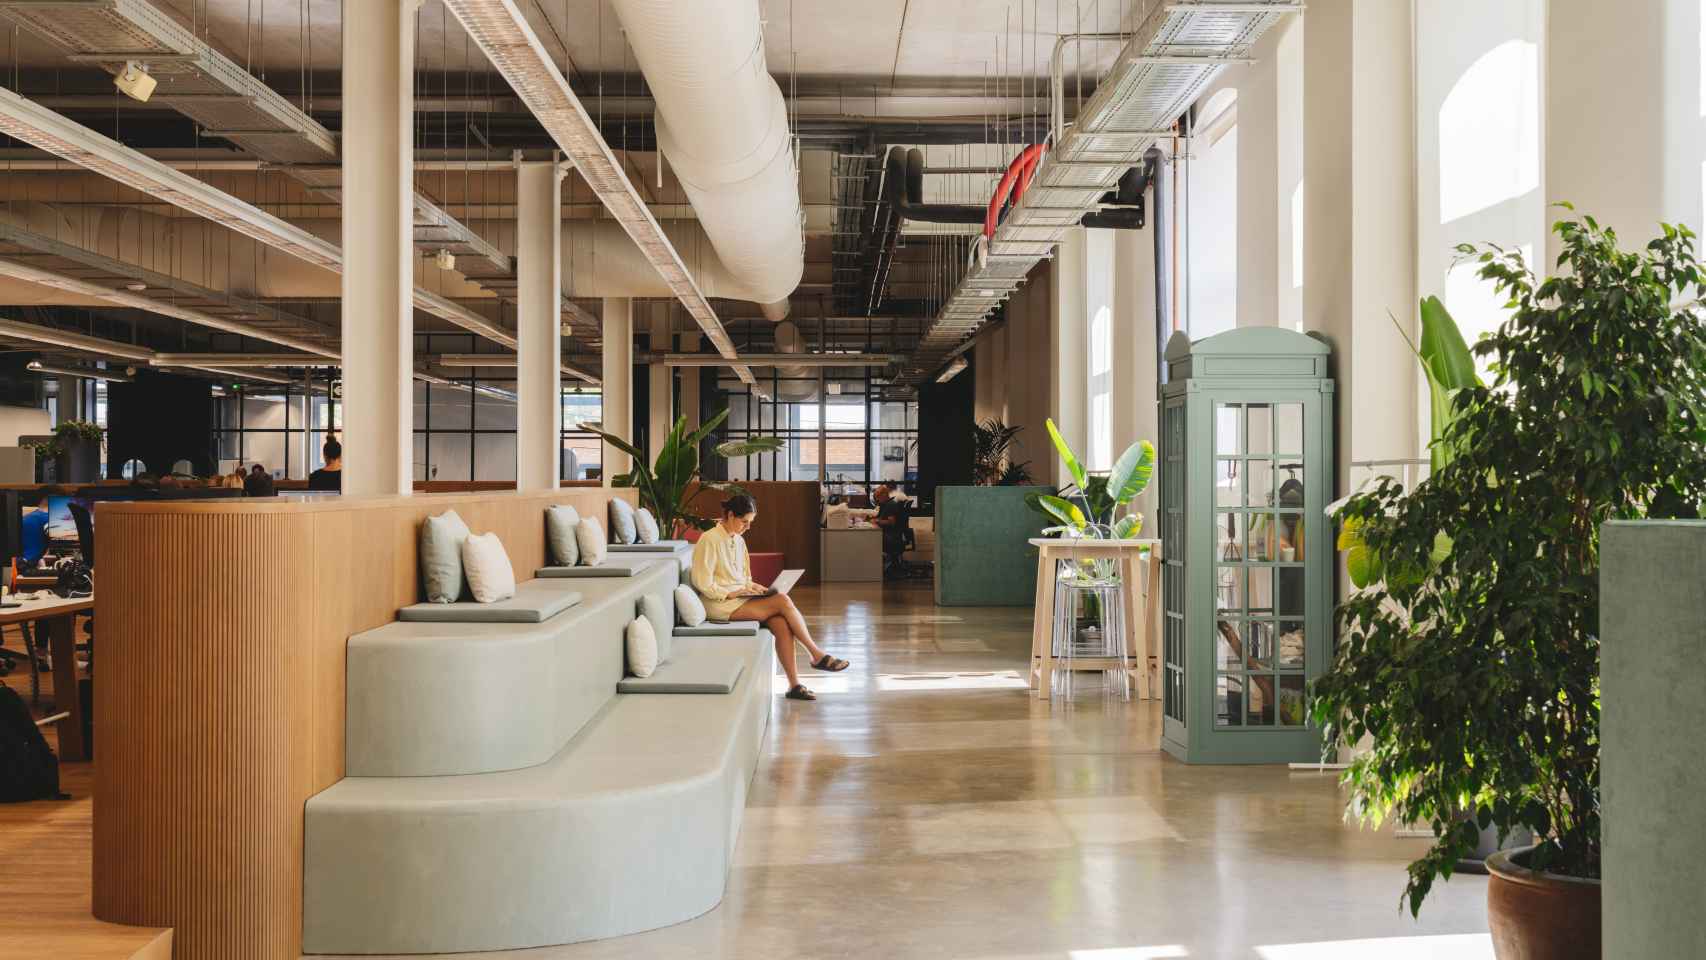 TOUS ha convertido los espacios de trabajo en ambientes que inspiran creatividad / Crédito Foto: Enric Badrinas-Elisava